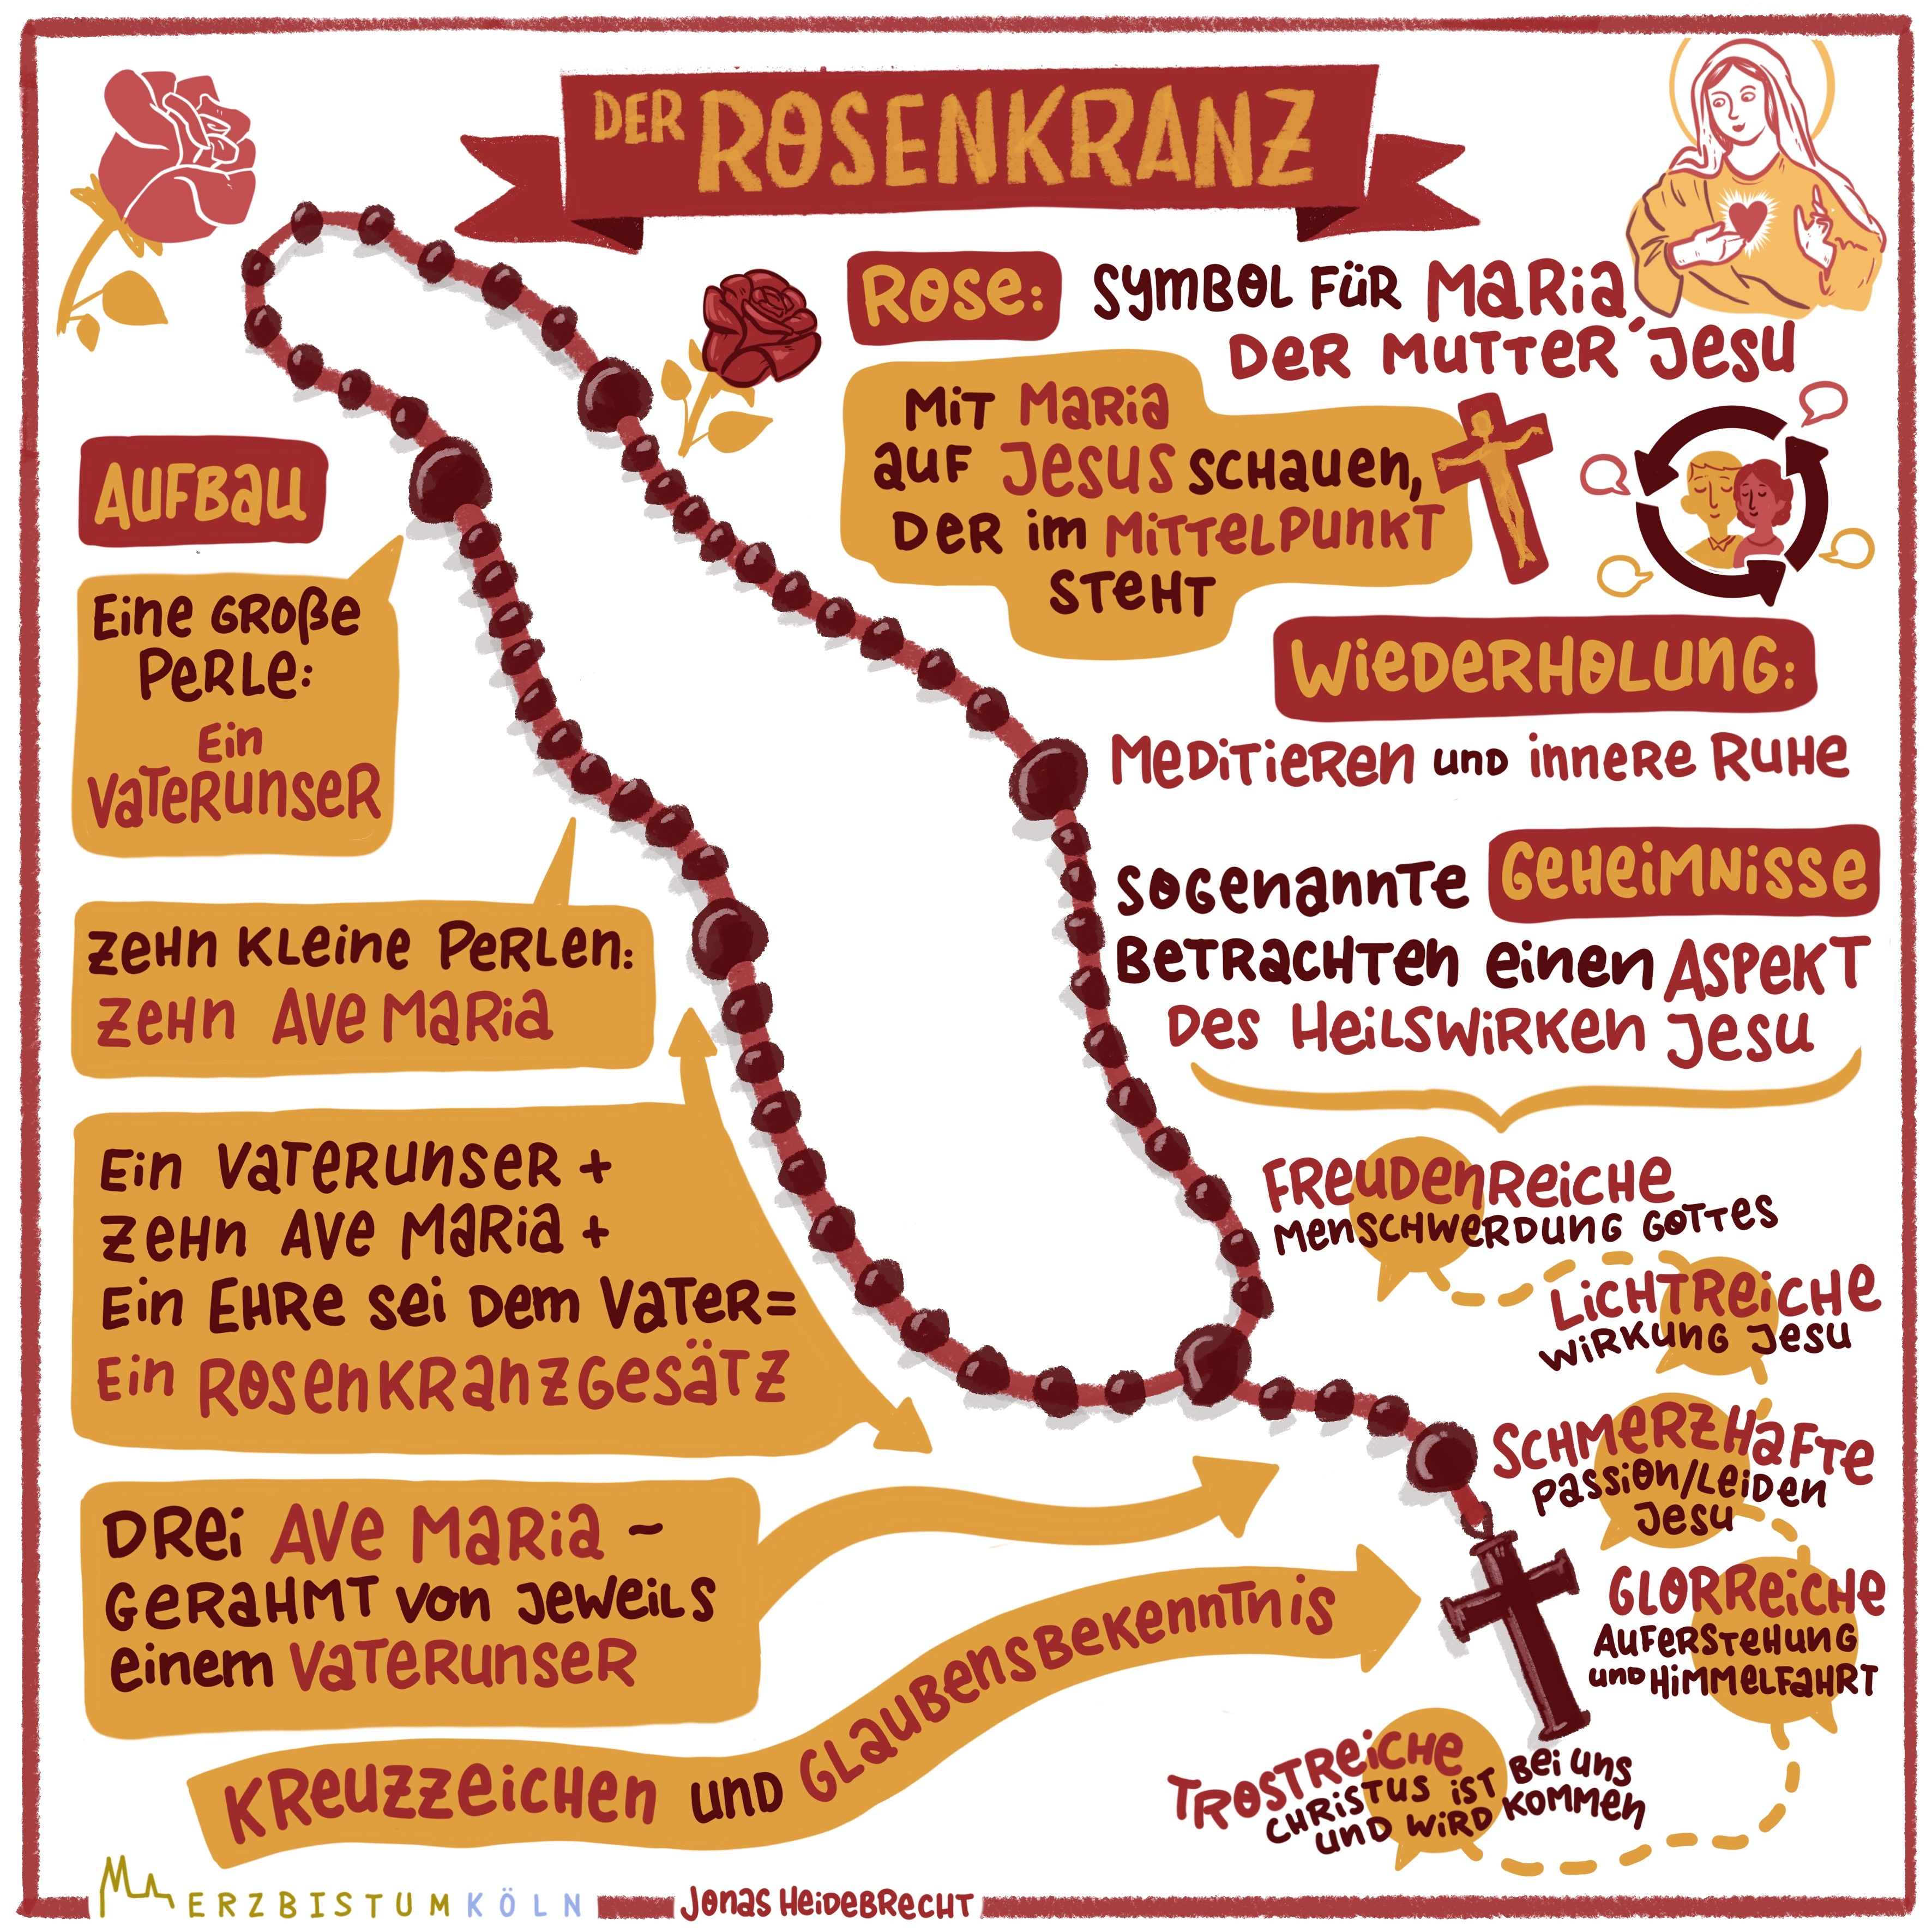 Infografik zum Rosenkranzgebet. Der Monat Oktober gilt traditionell als der Rosenkranzmonat.